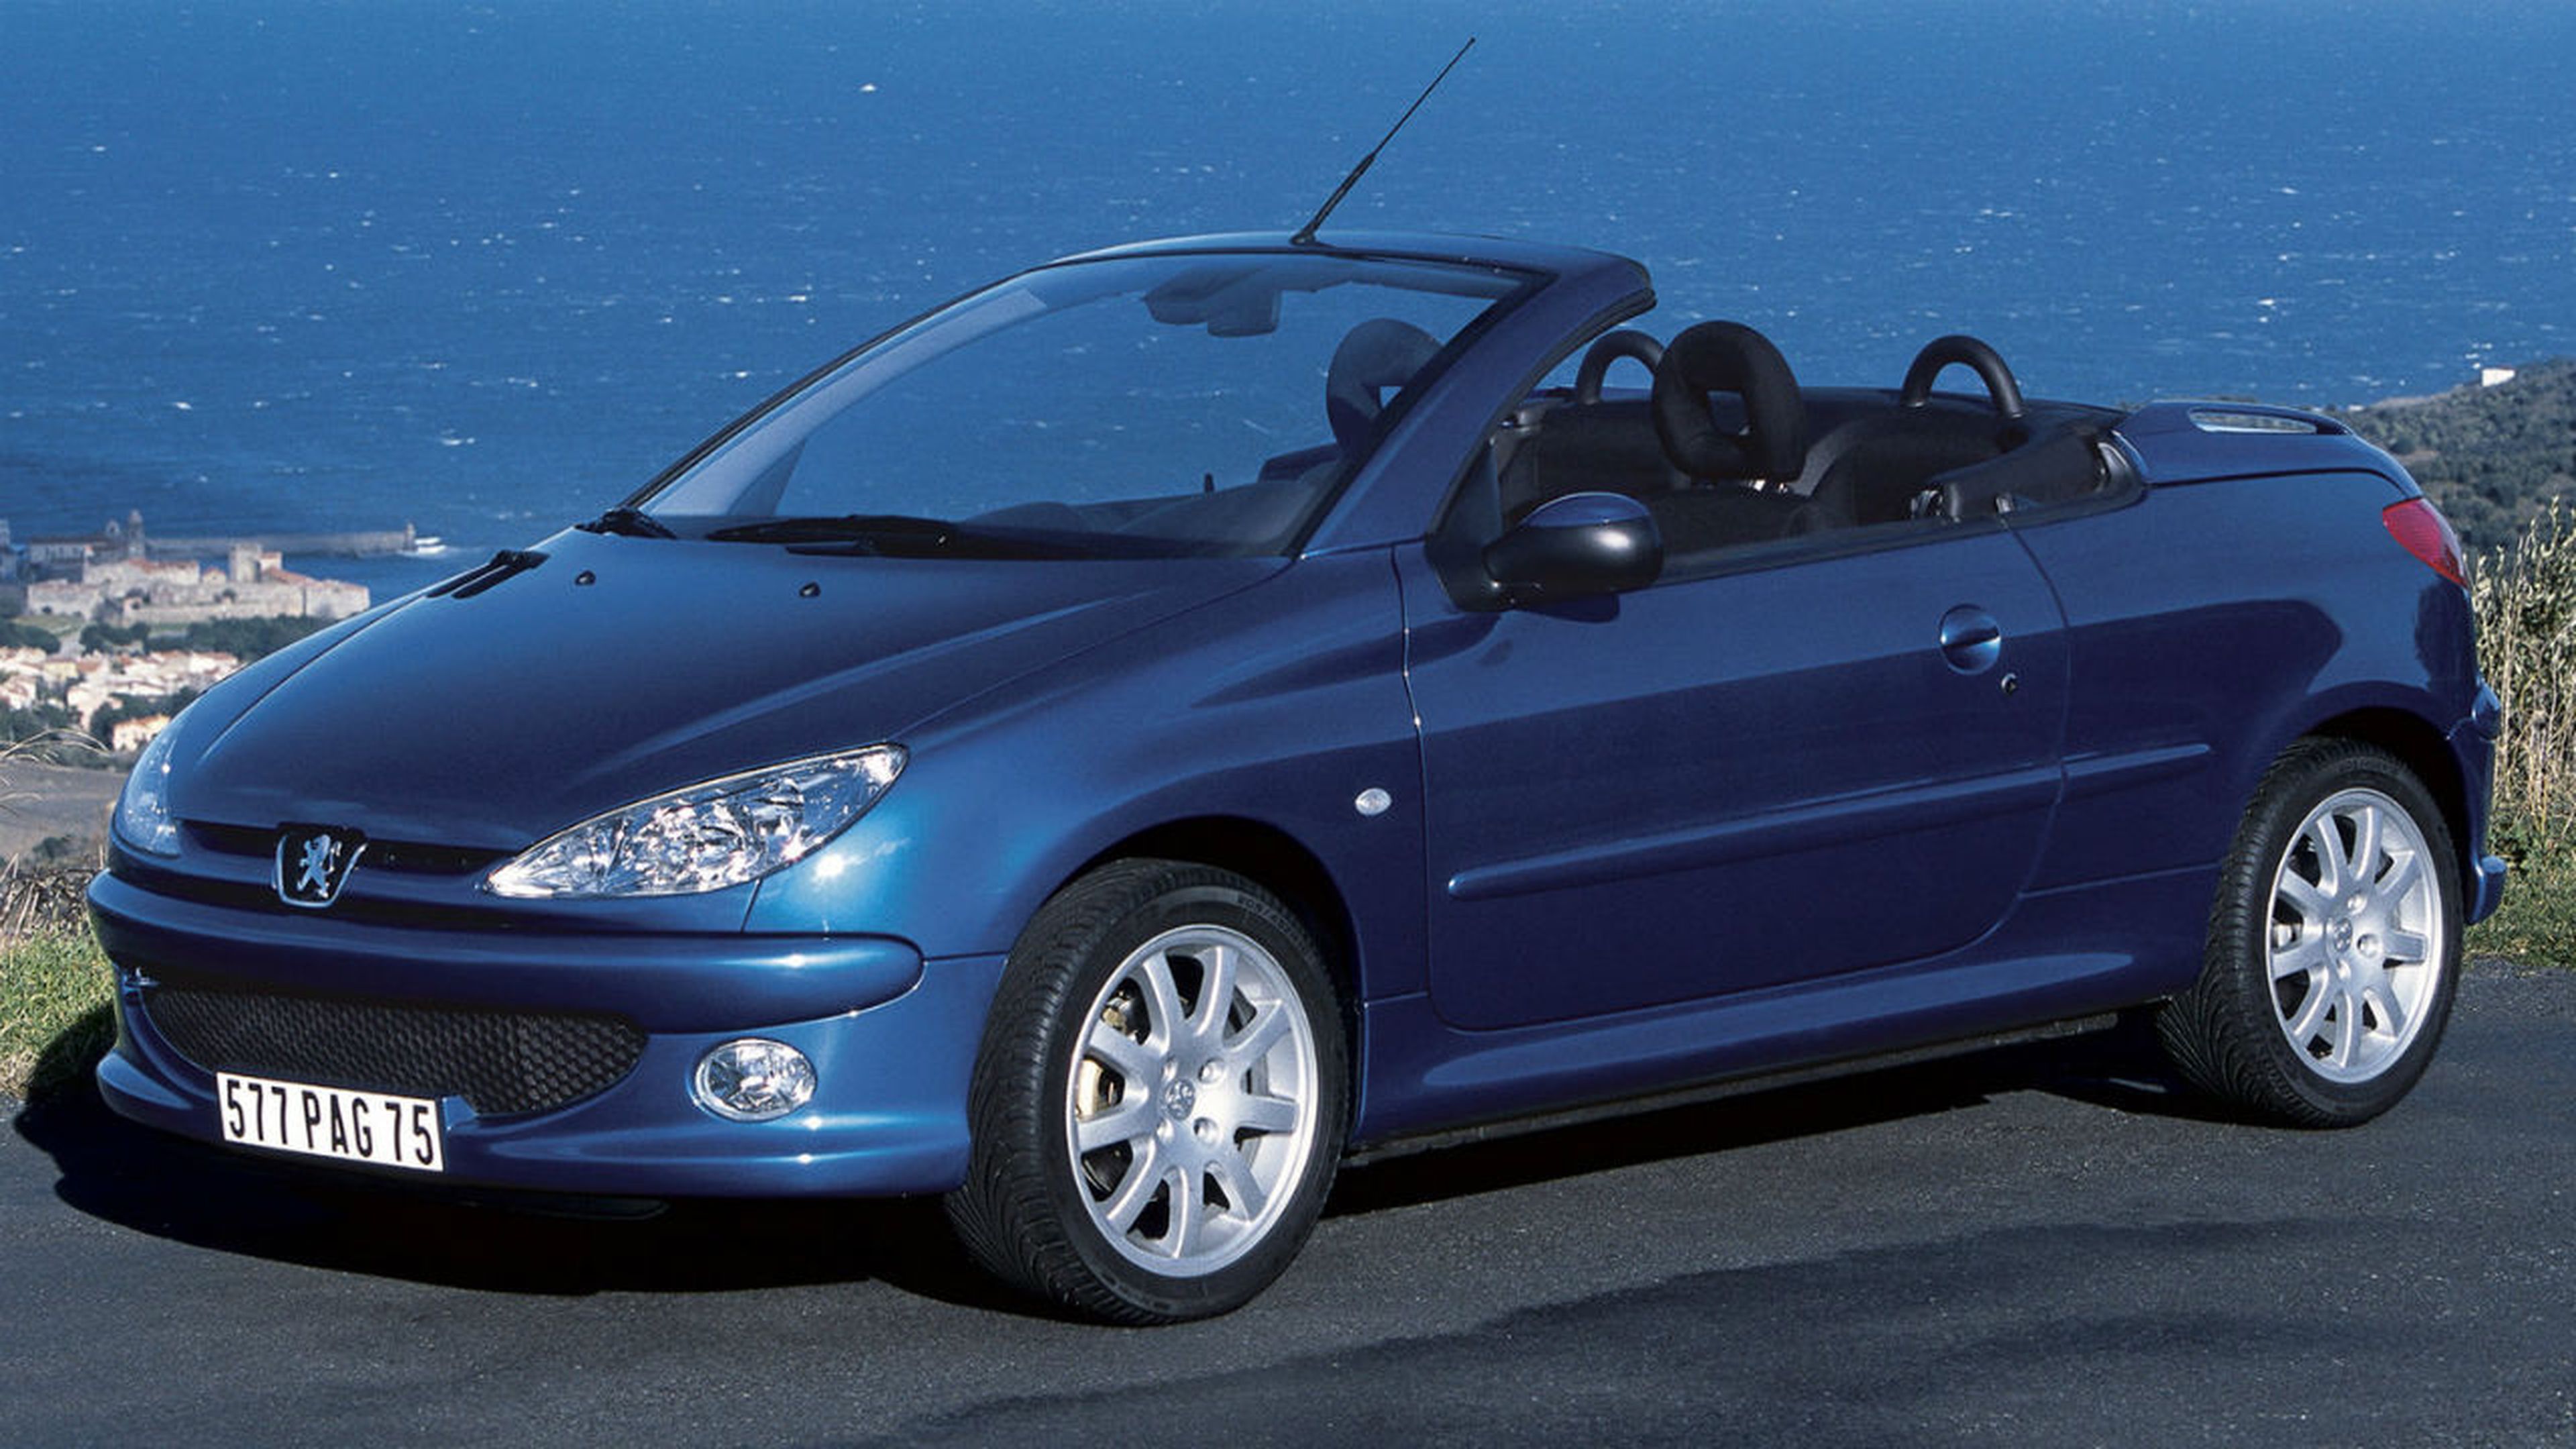 Pocos vehículos más distinguidos que este Peugeot 206 CC encontrarás en el mercado de ocasión por menos dinero.